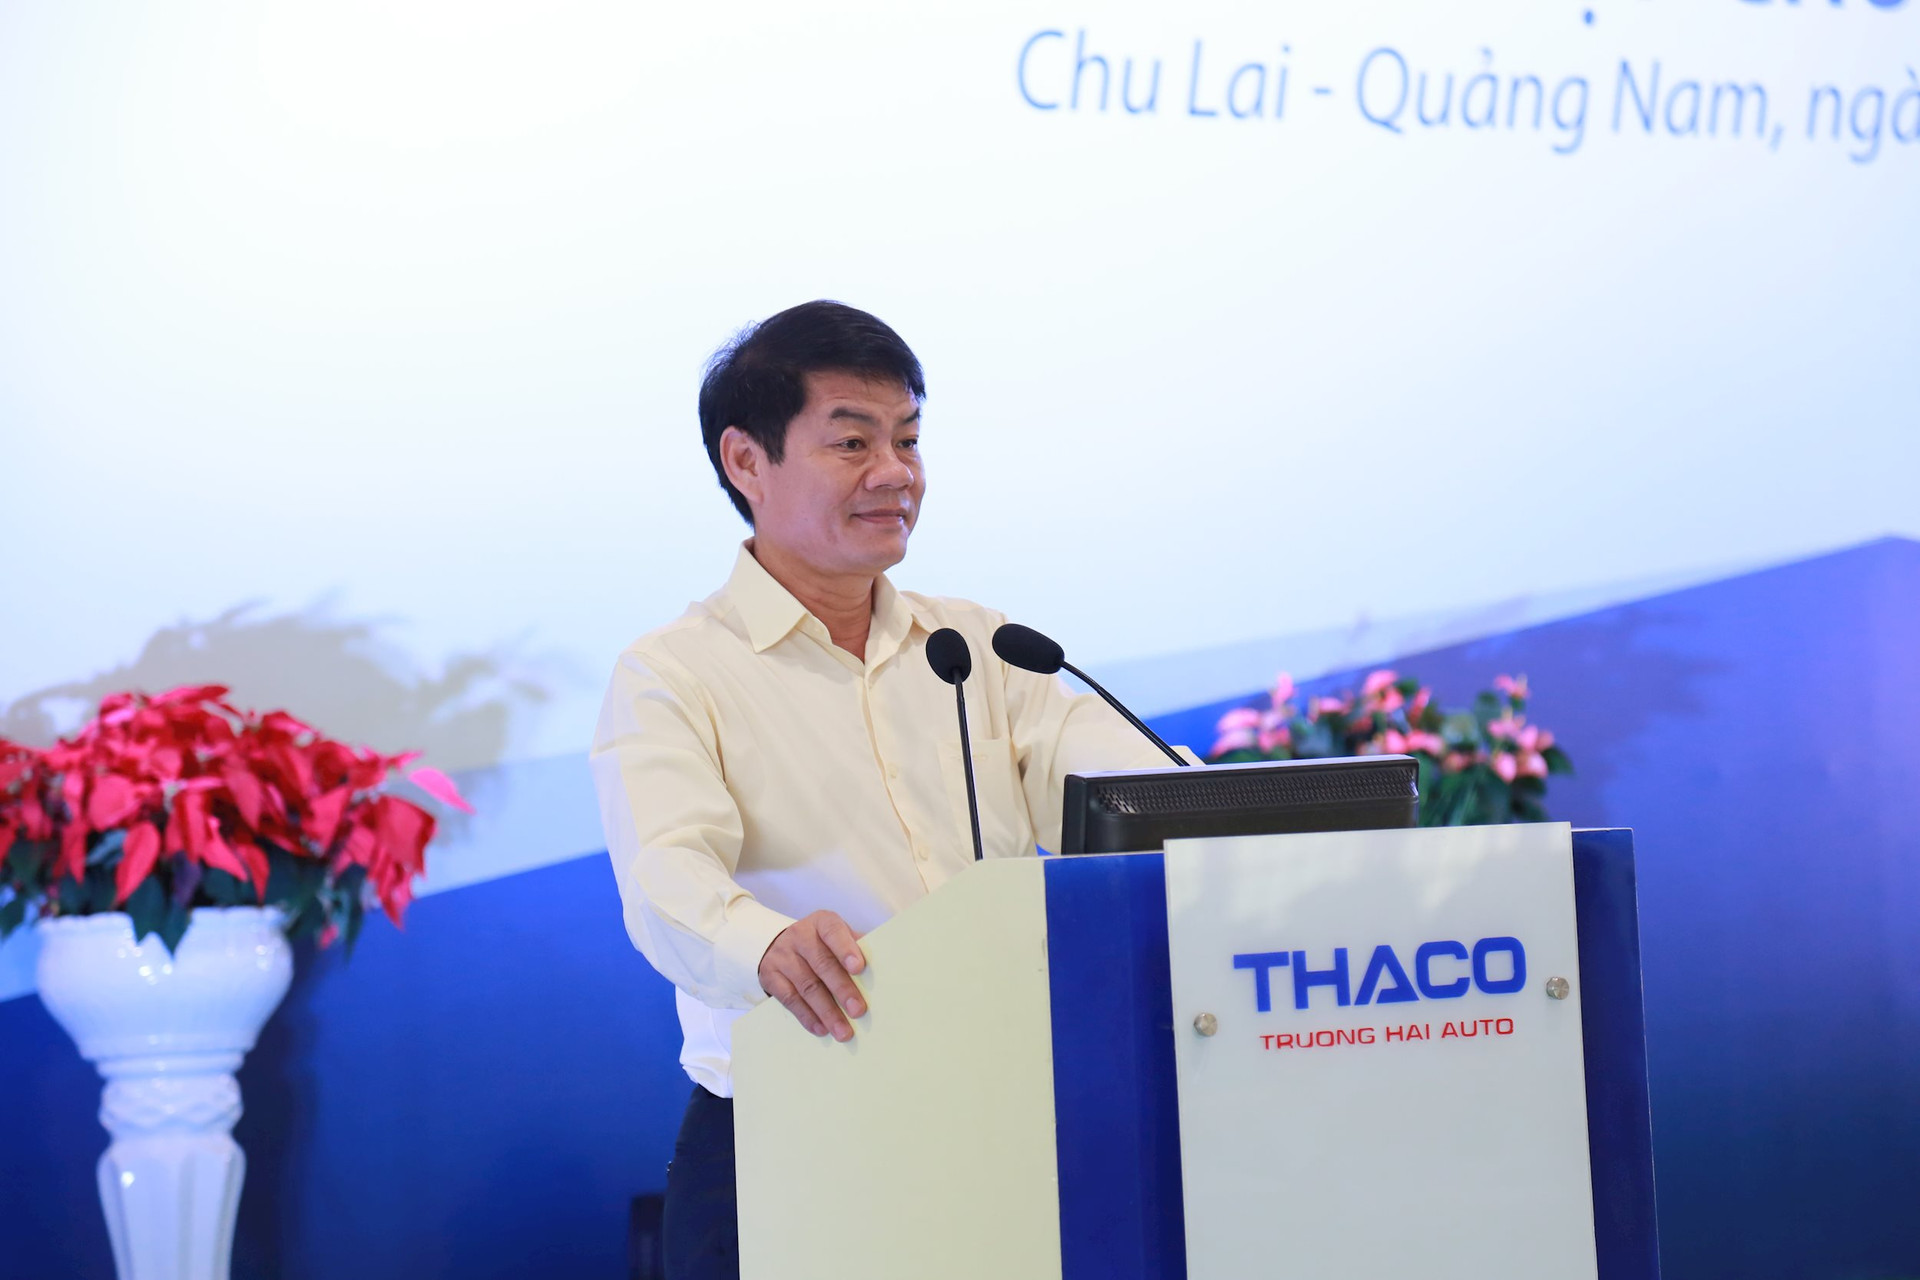 Ngành thuế Quảng Nam 'lo lắng' về Thaco của tỷ phú Trần Bá Dương- Ảnh 1.